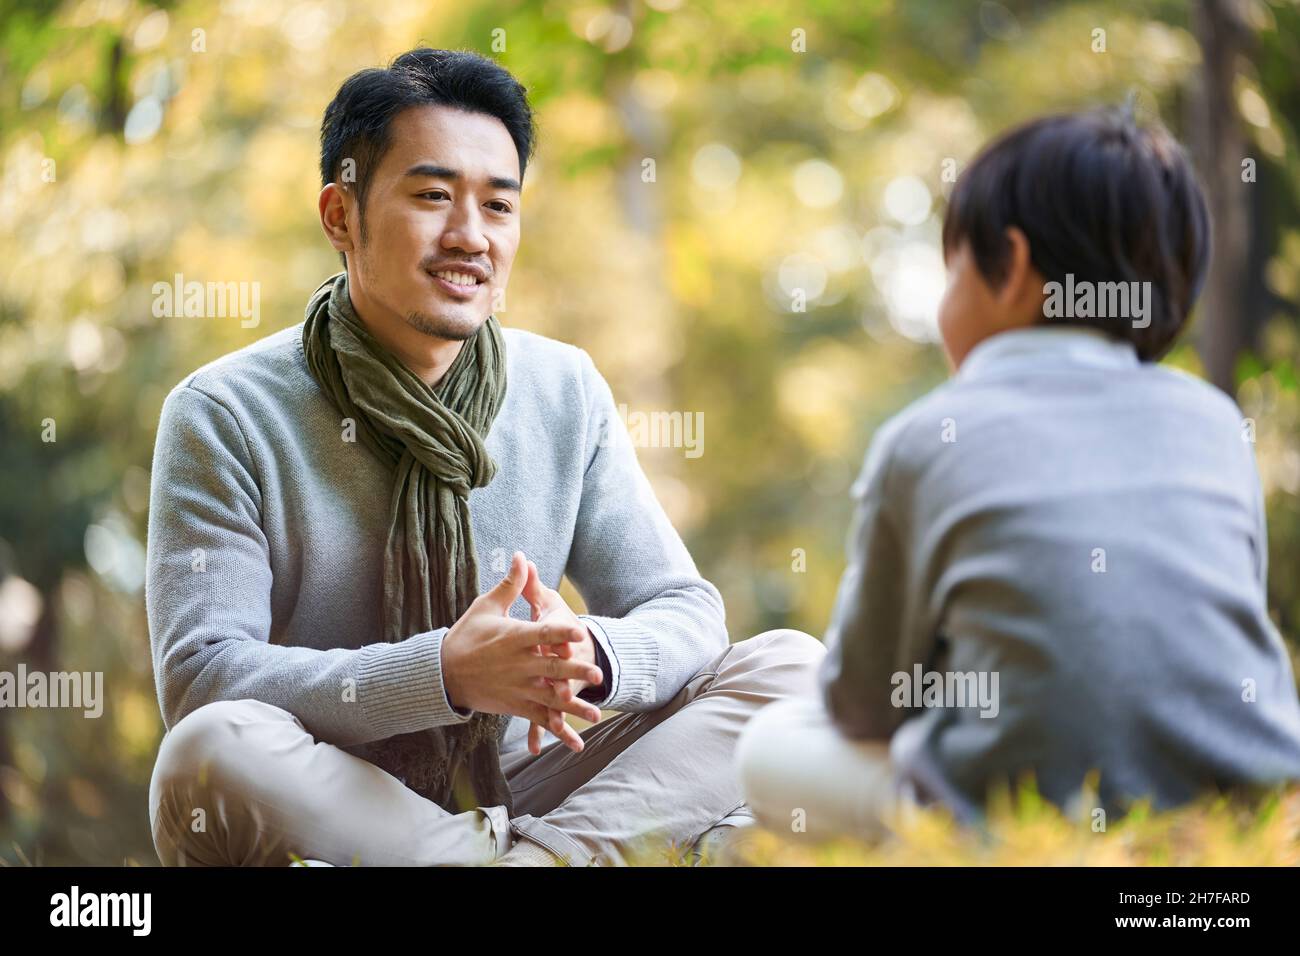 père et fils asiatiques assis sur l'herbe ayant une conversation agréable à l'extérieur dans le parc Banque D'Images